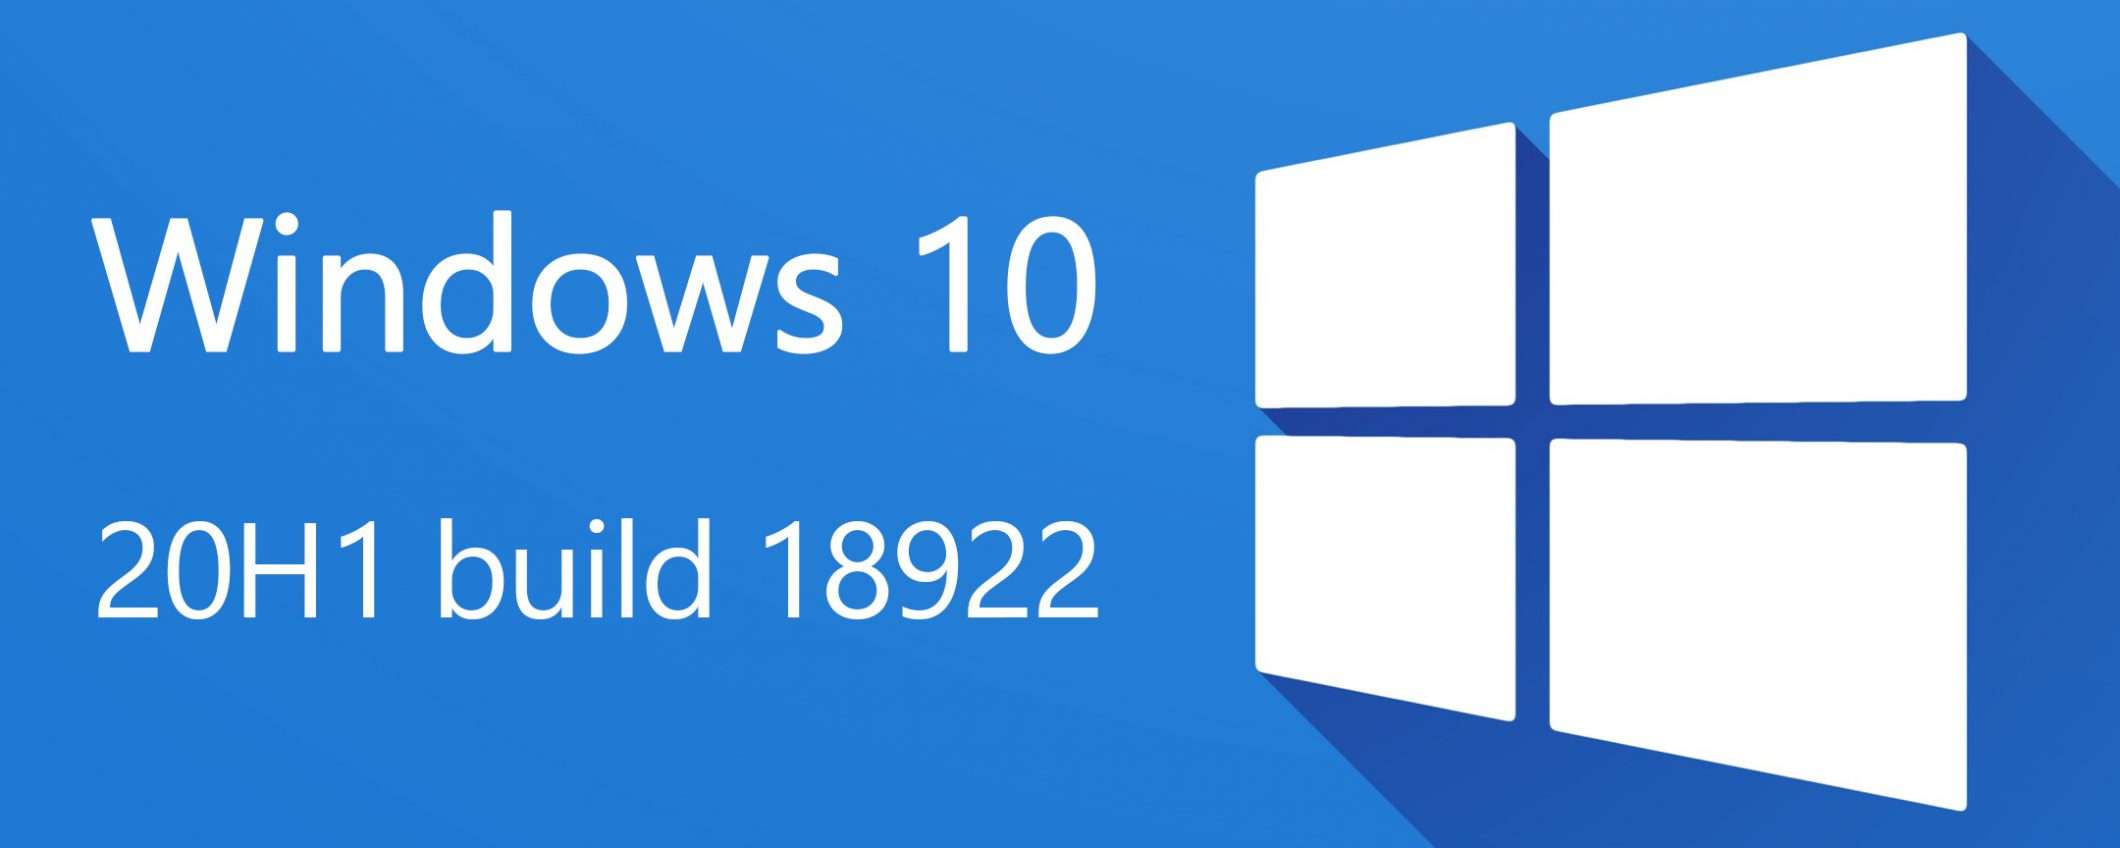 Windows 10 20H1, le novità della build 18922